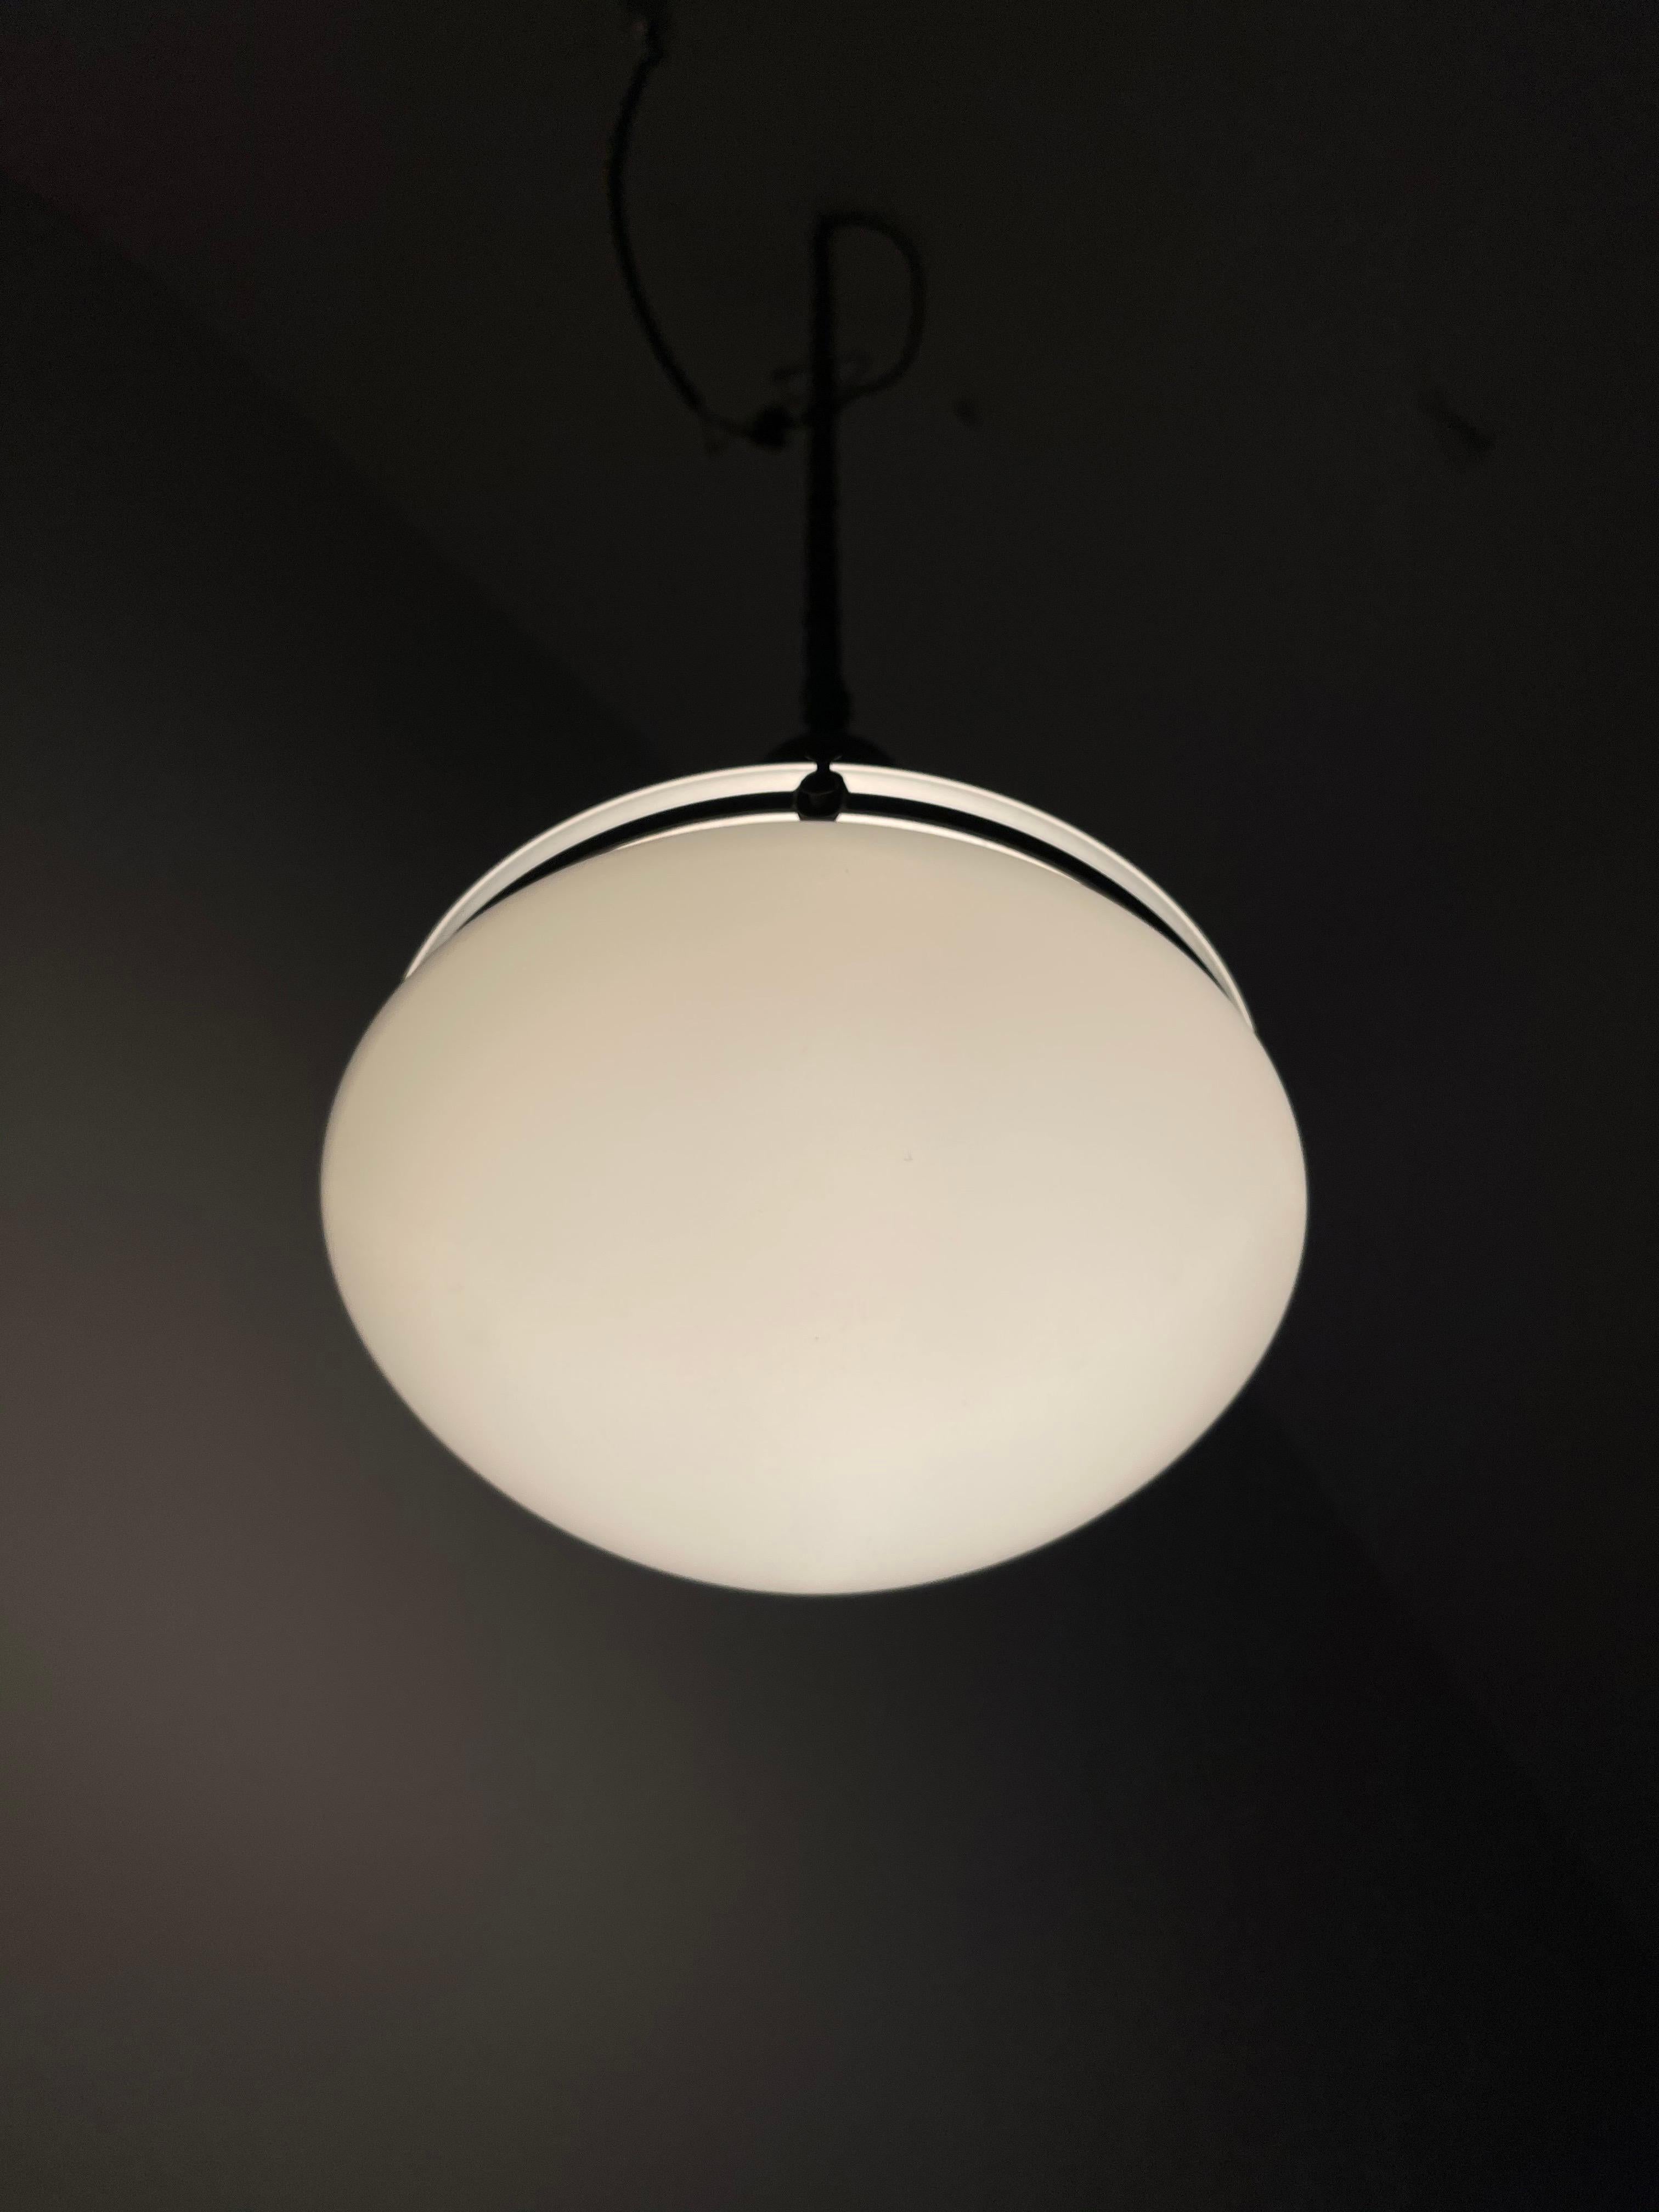 Antique Bauhaus Peter Behrens Opaline Milk Glass Ceiling Pendant Light Lamp 1